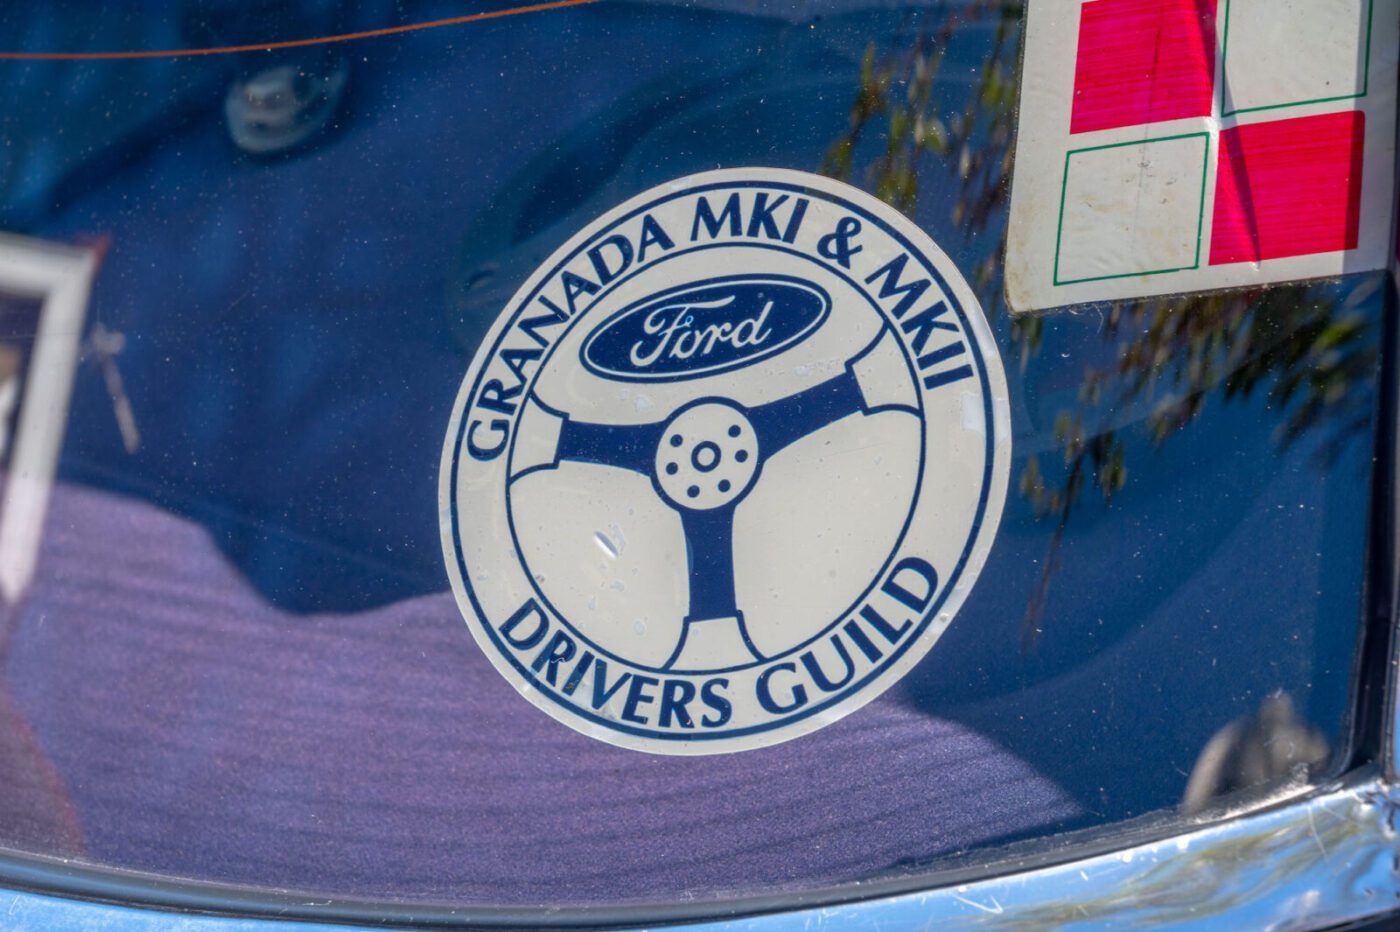 Ford Granada Drivers Guild sticker